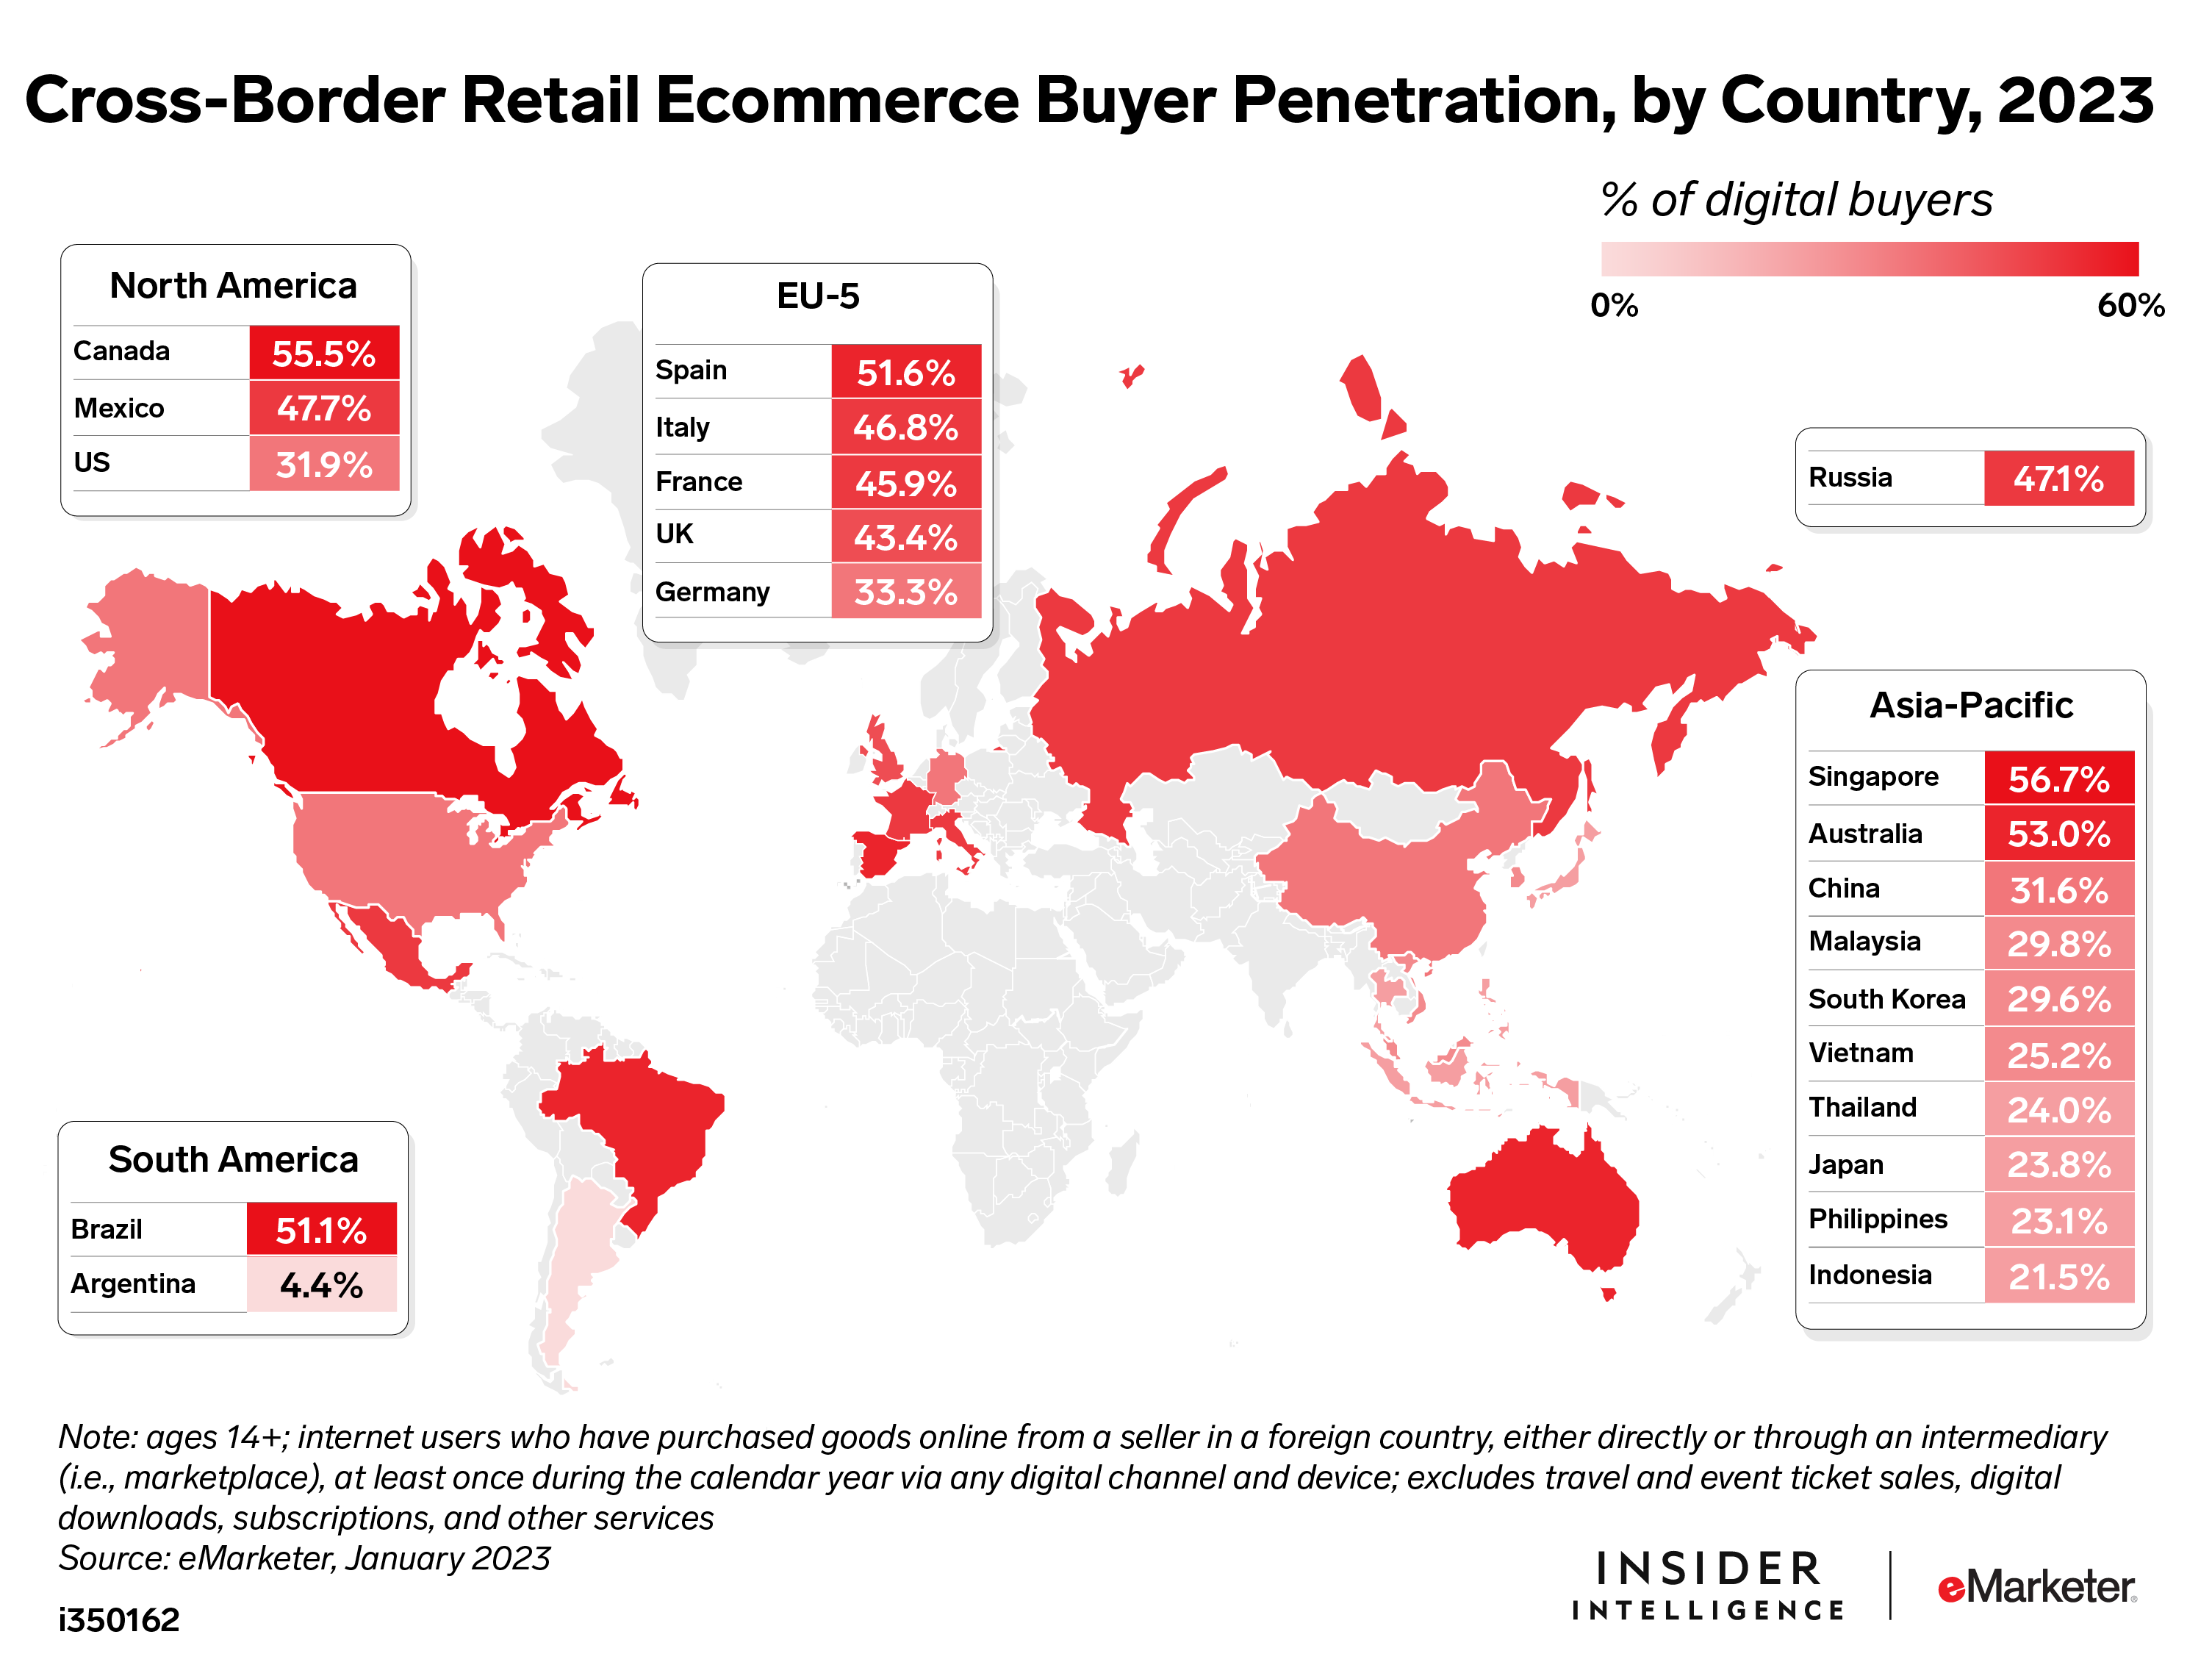 Cross-Border Retail Ecommerce Buyers Around the World, 2023